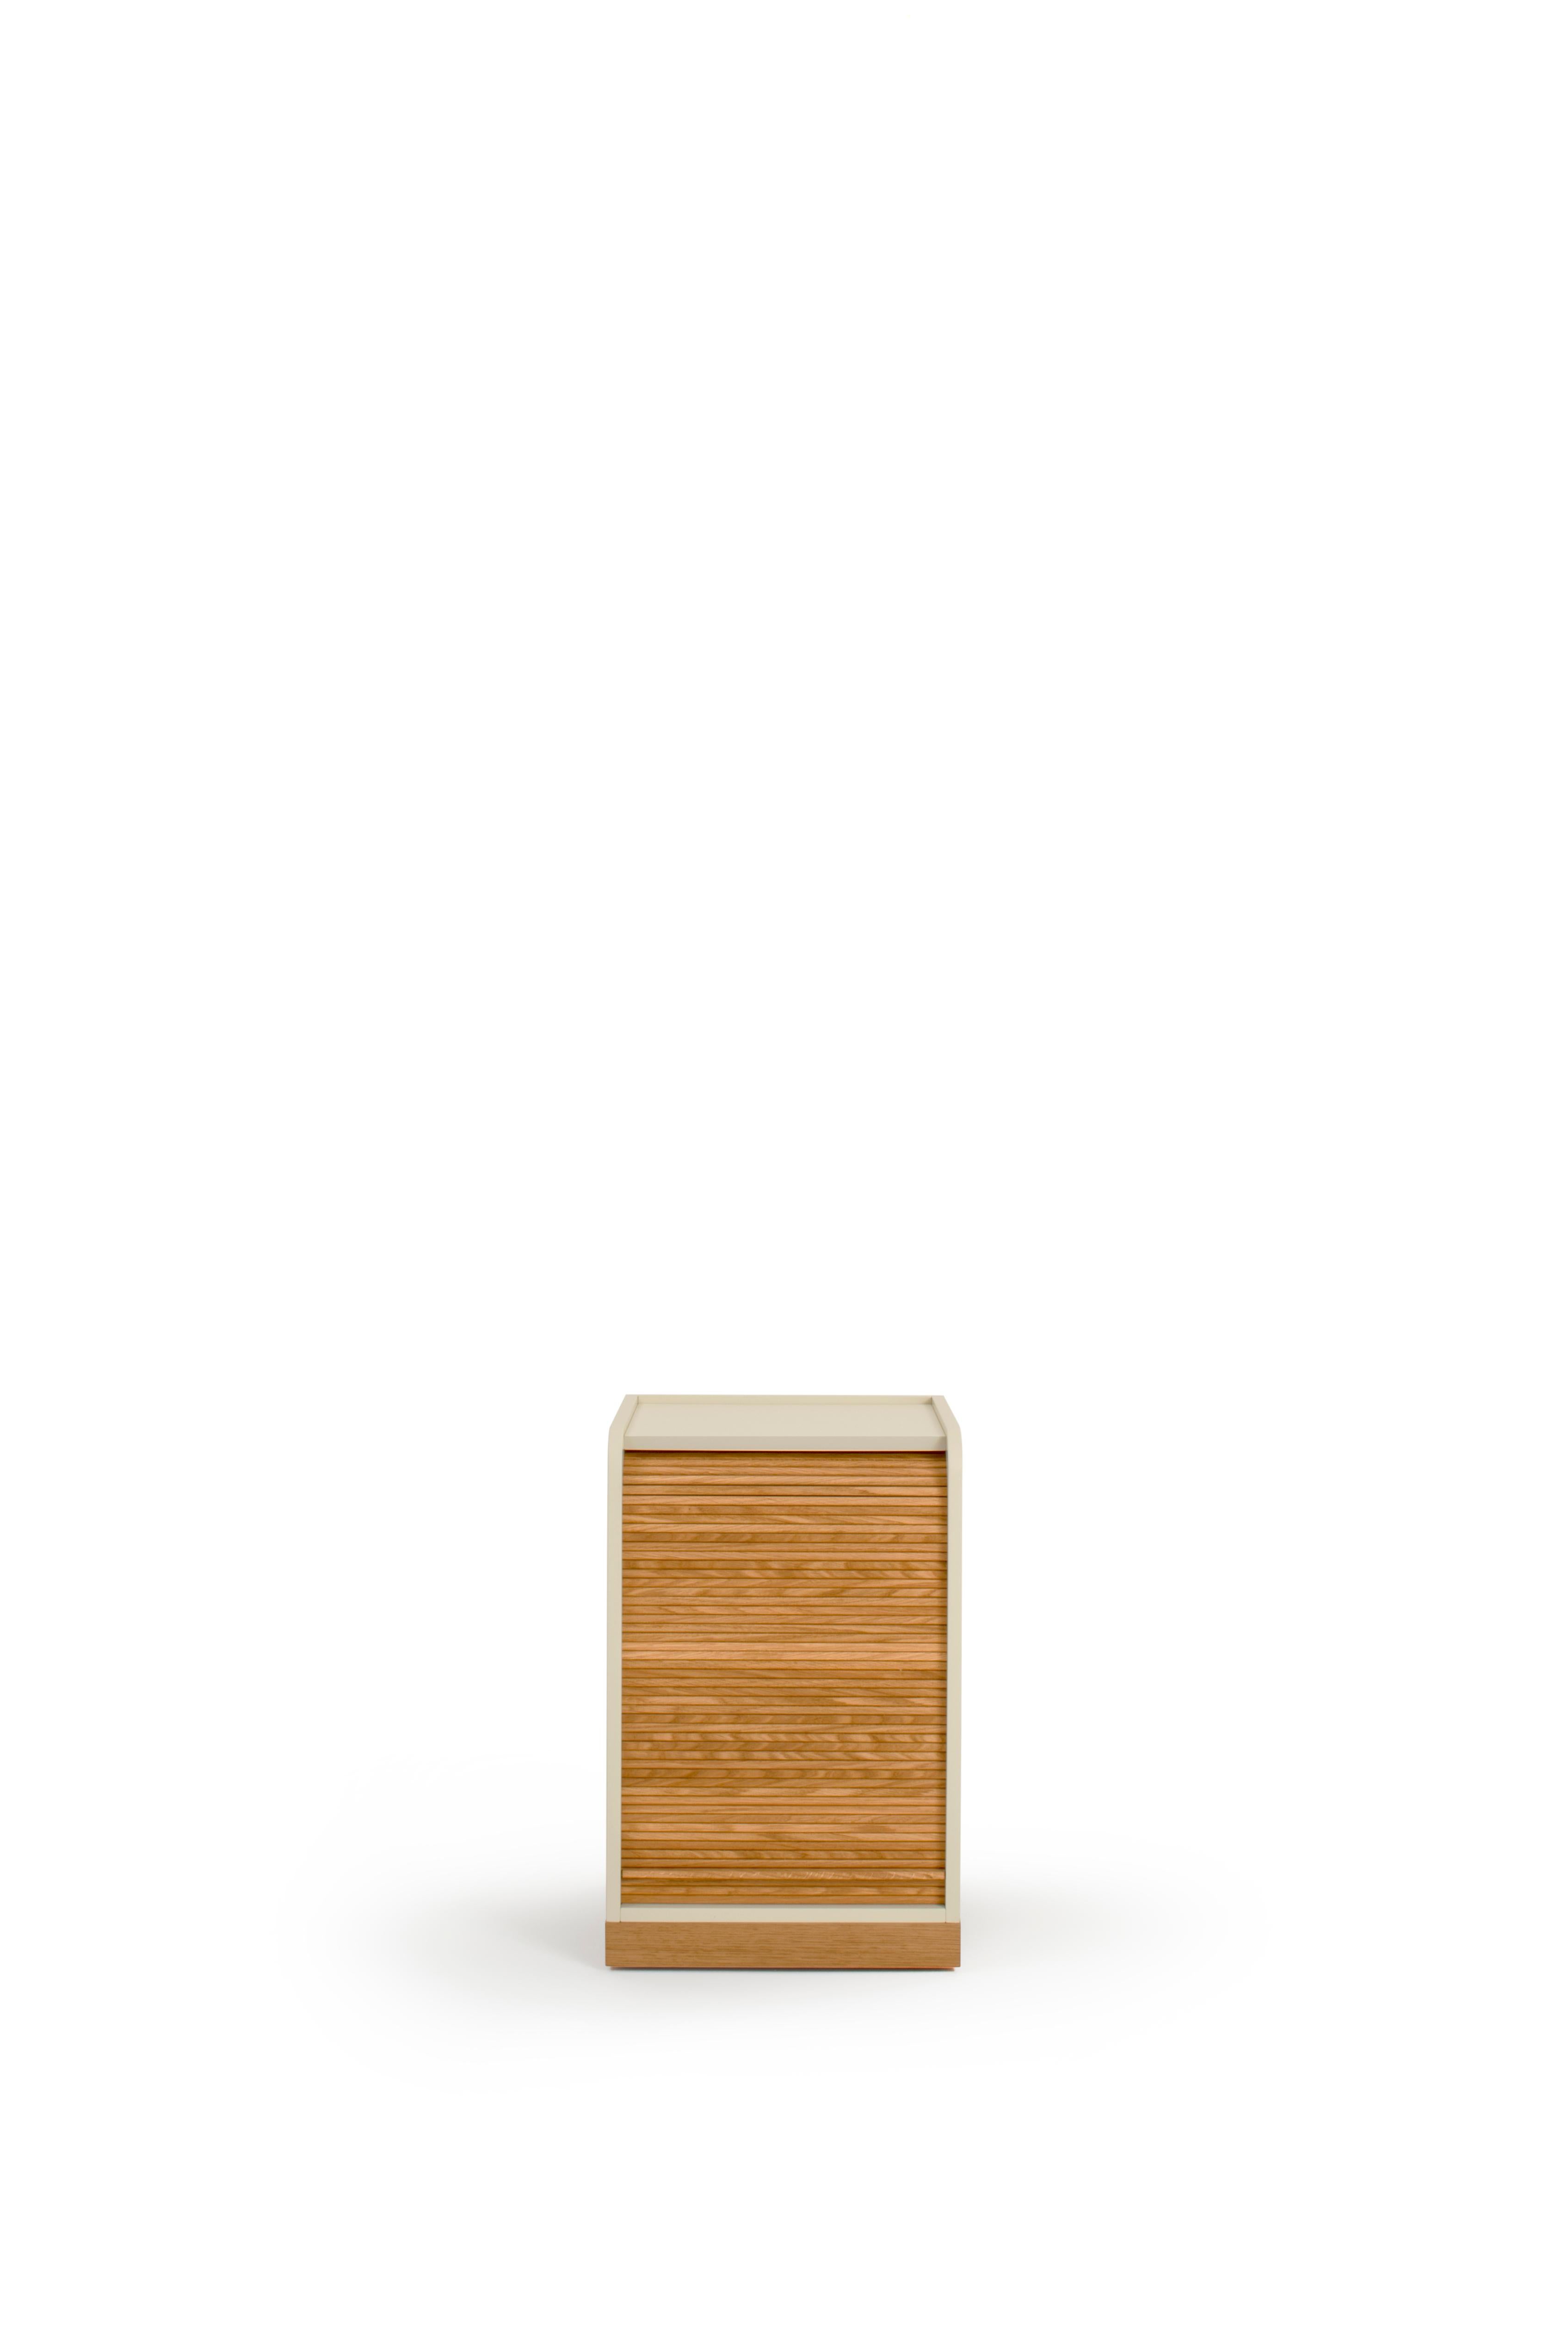 Meuble à roulettes Tapparelle, blanc sable de Colé Italia avec Emmanuel Gallina
Dimensions : H.55 D.40 W.40 cm.
Matériaux : Conteneur sur roues avec plinthe et volet coulissant 